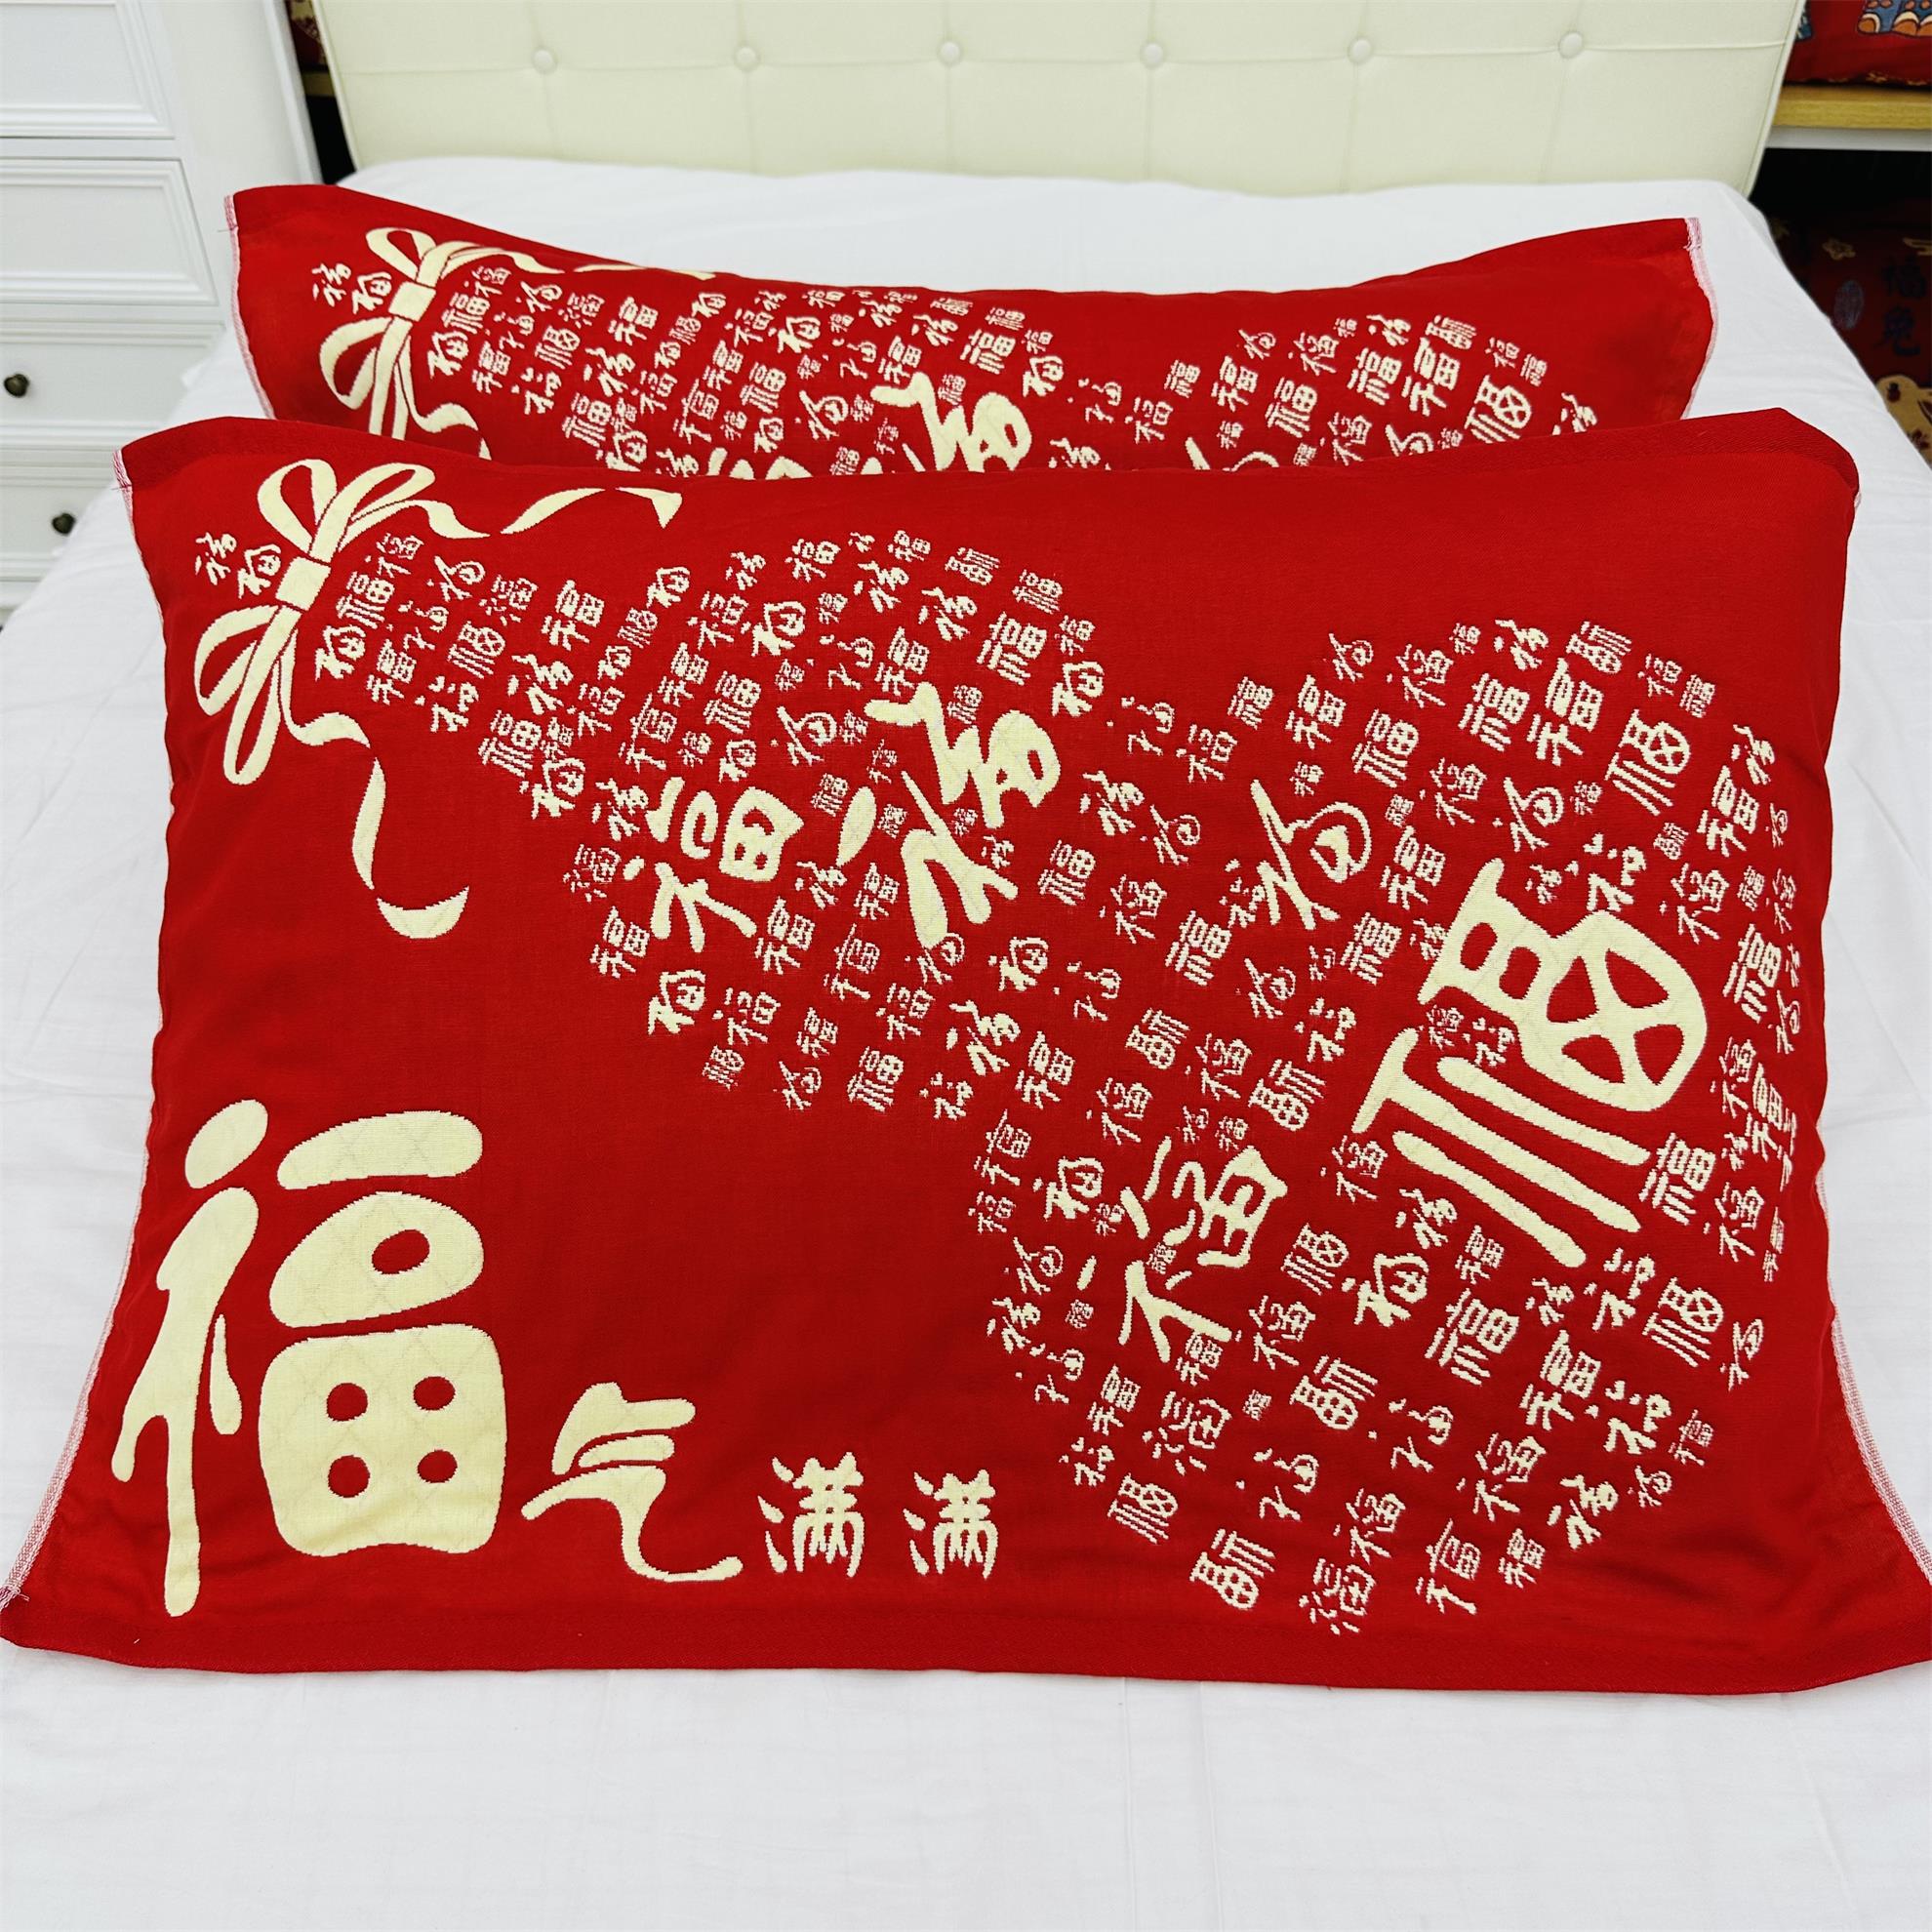 龙年新春款红枕巾一对装52*78大号成人家用棉纱布红色喜庆枕头巾